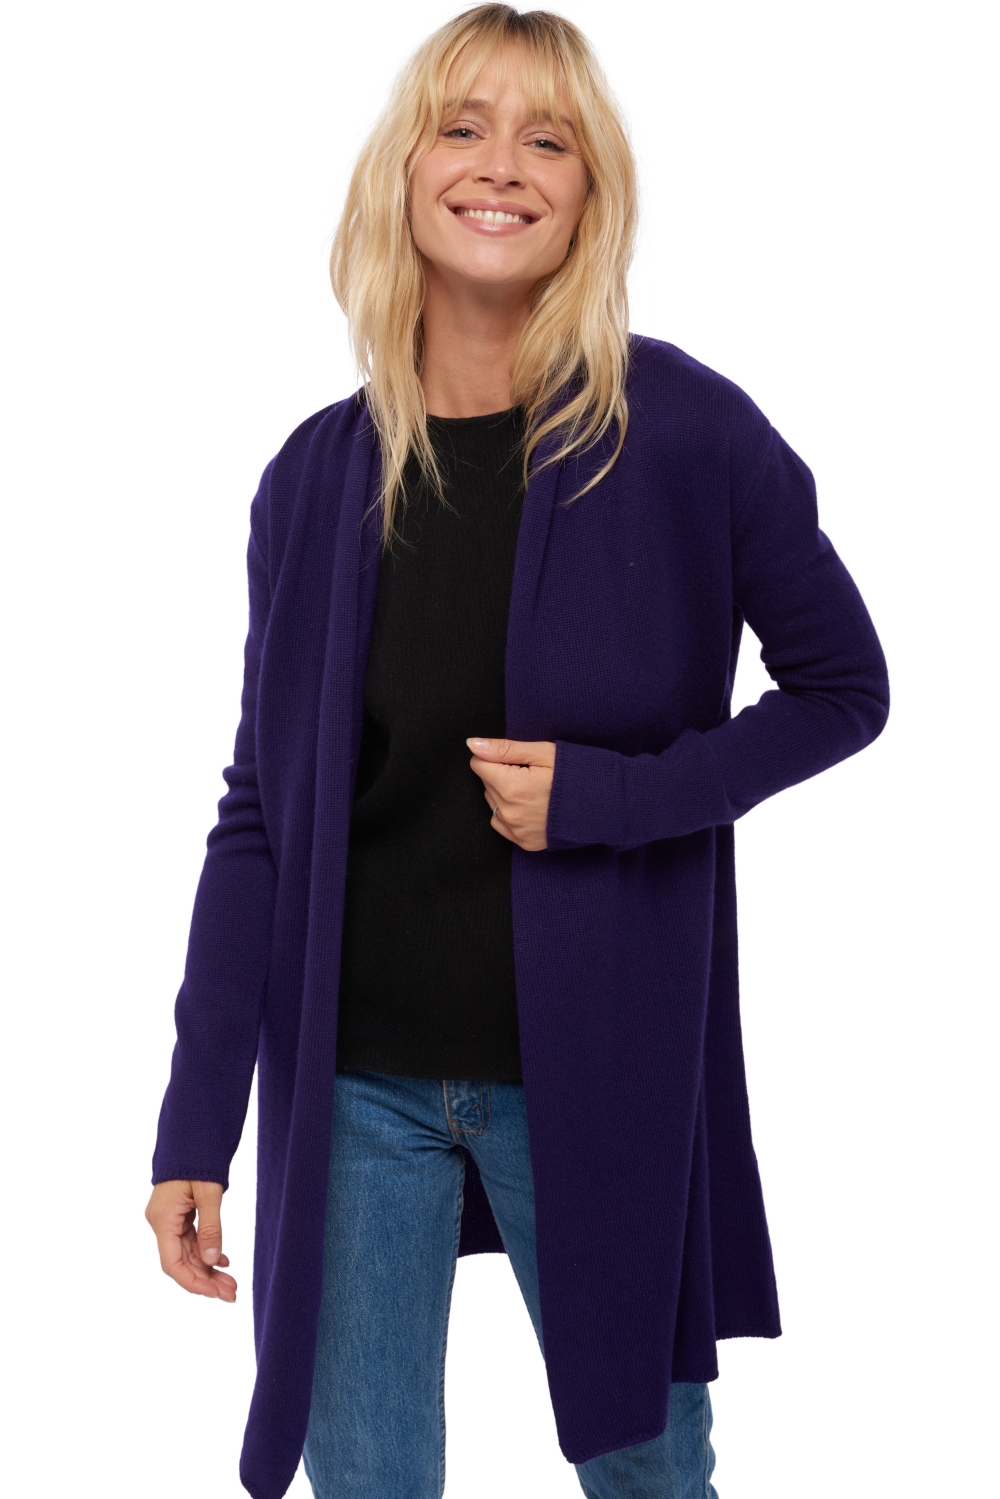 Cashmere cashmere donna maglioni in filato grosso perla deep purple m